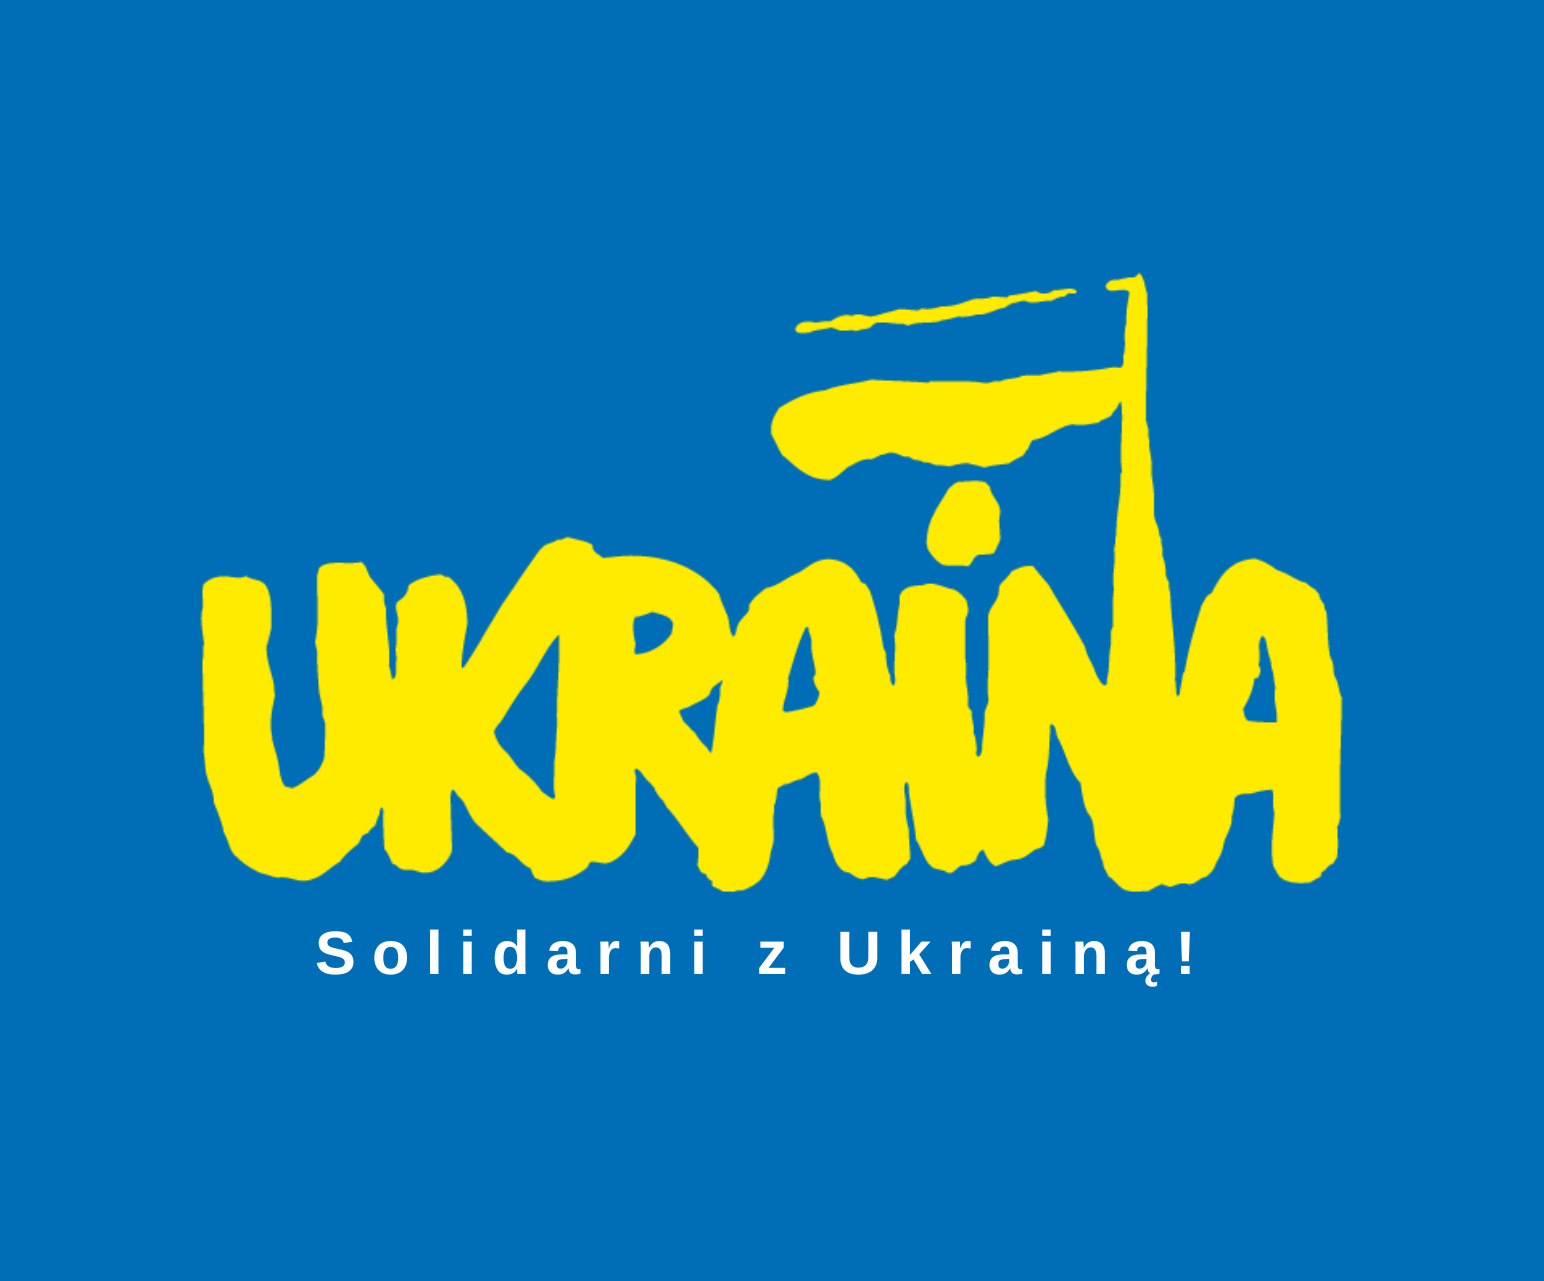 Wiec solidarności z Ukrainą!